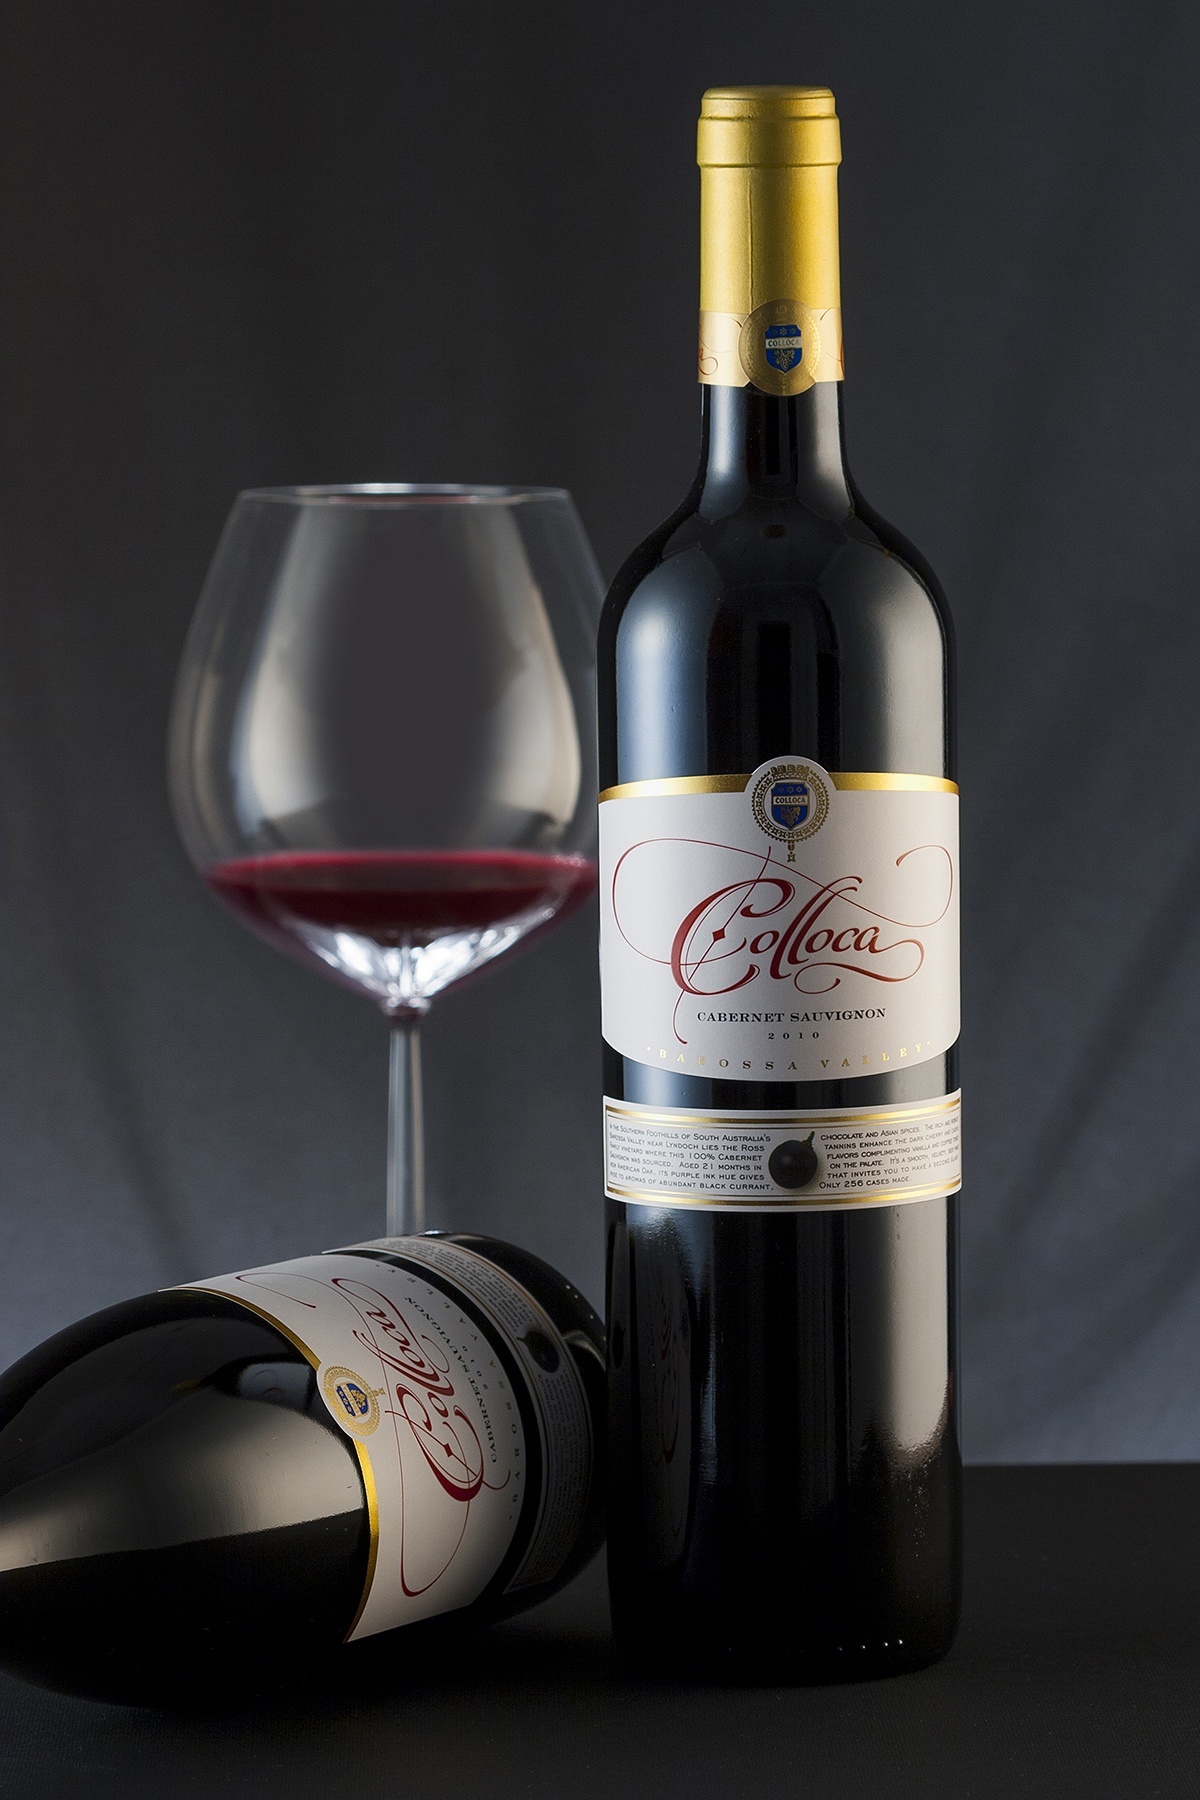 Colloca Estate wine label